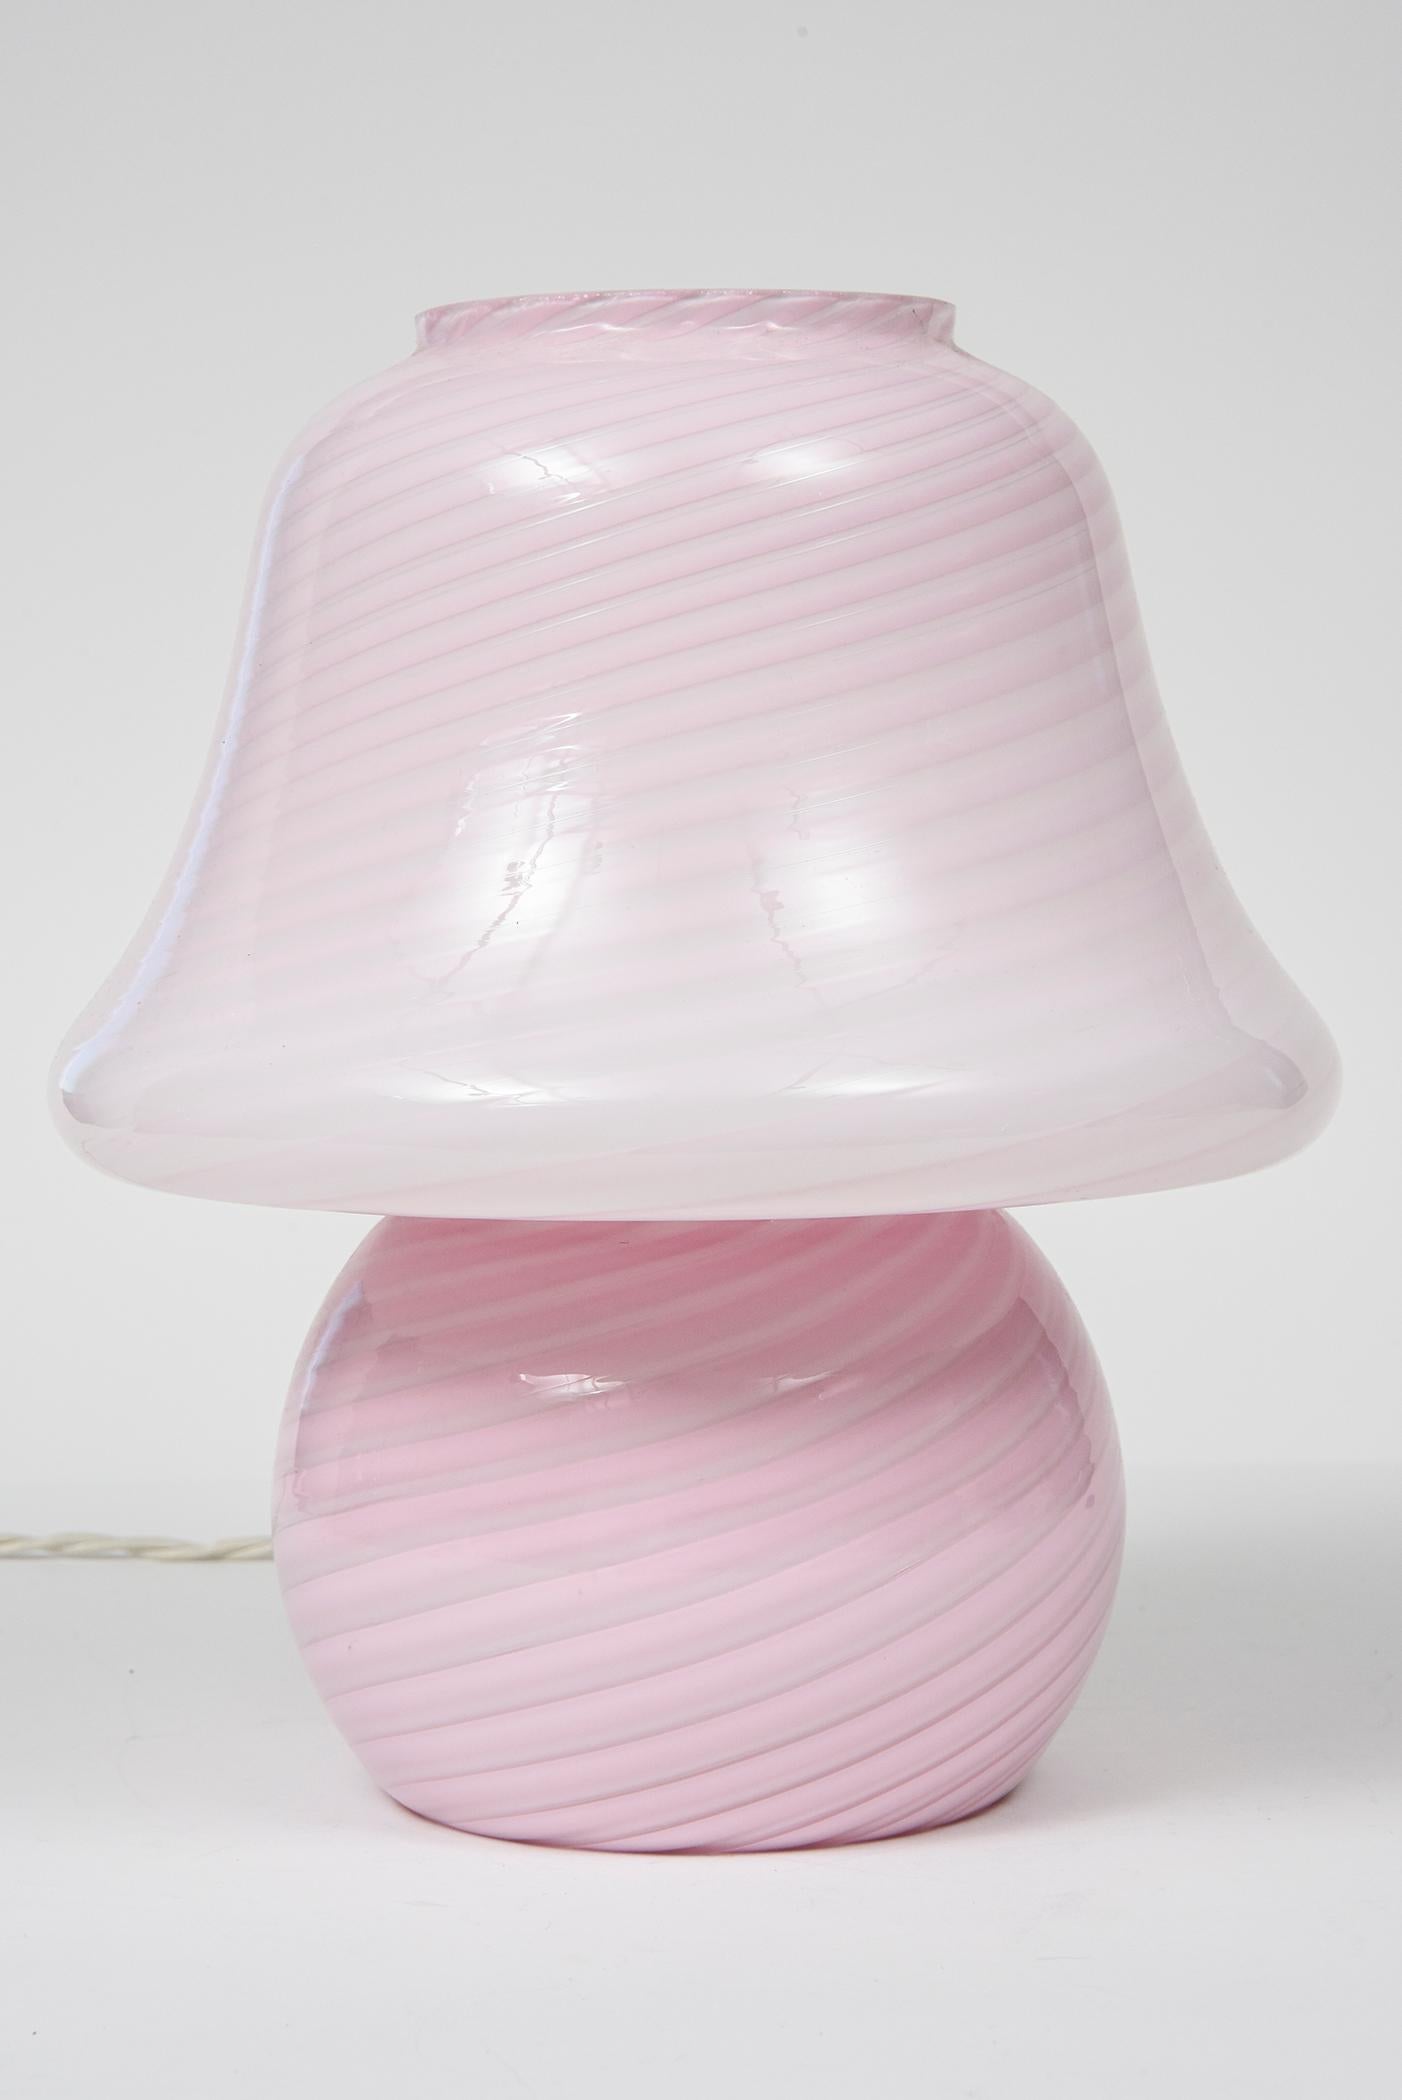 Italian 1970s Vetri Murano Pink Spiral Mushroom Art Glass Lamp